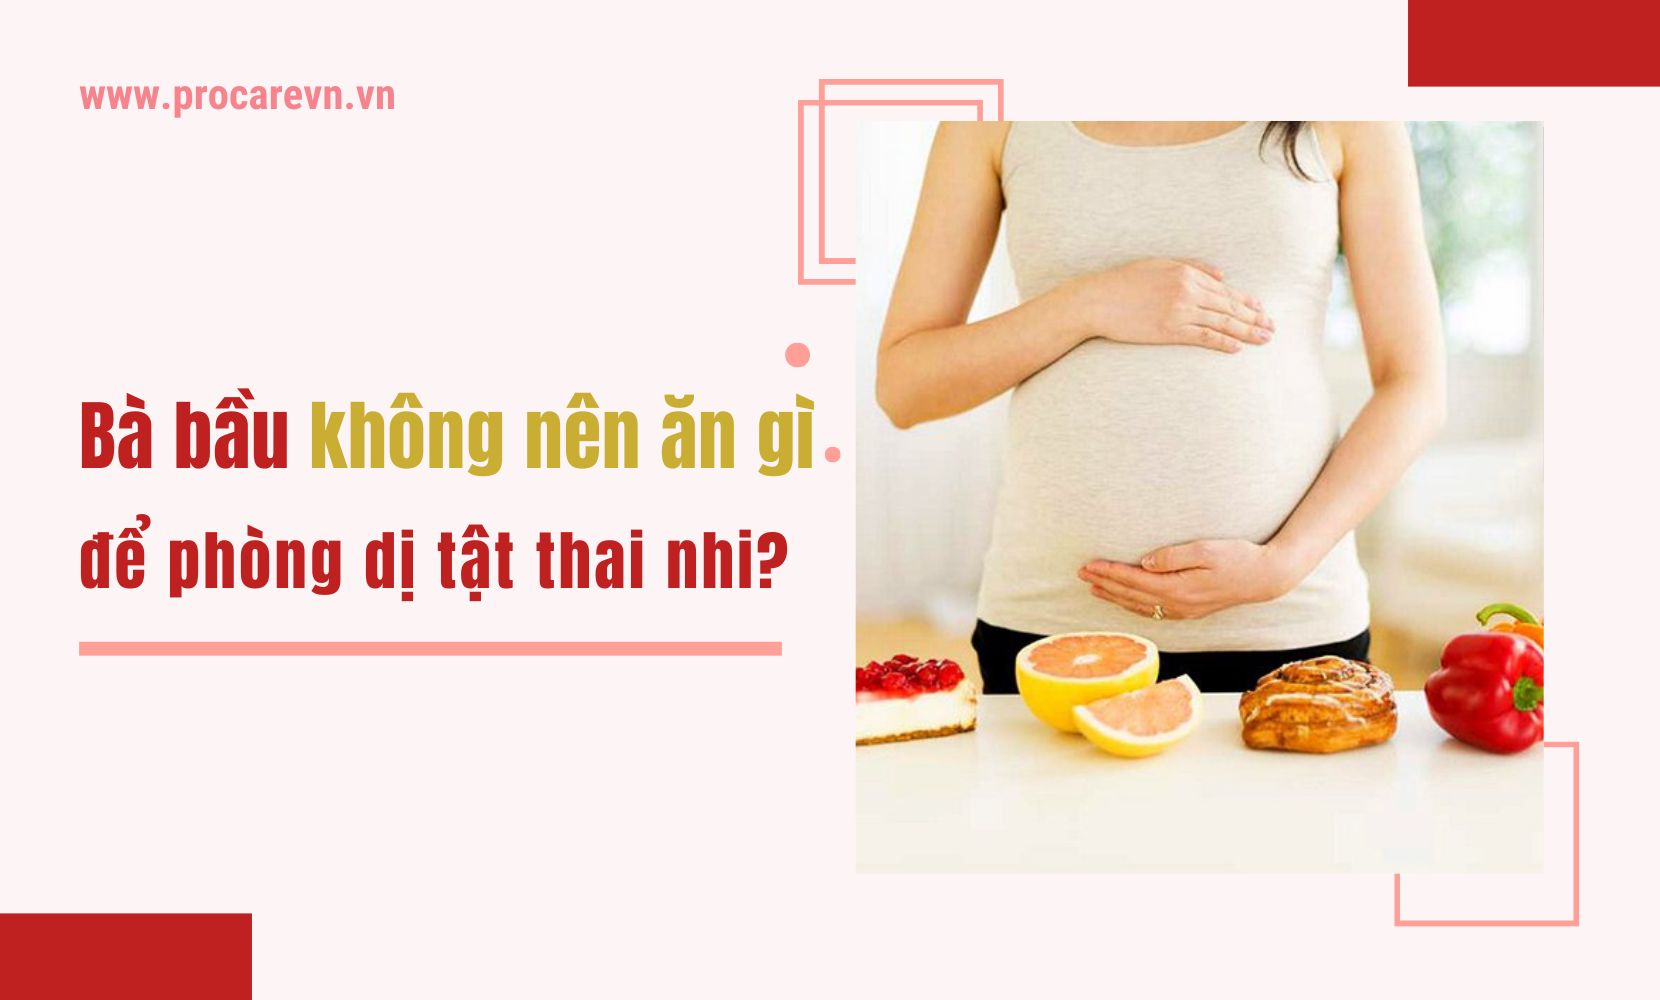 10 loại có thai ko nên ăn gì để đảm bảo sức khỏe thai nhi